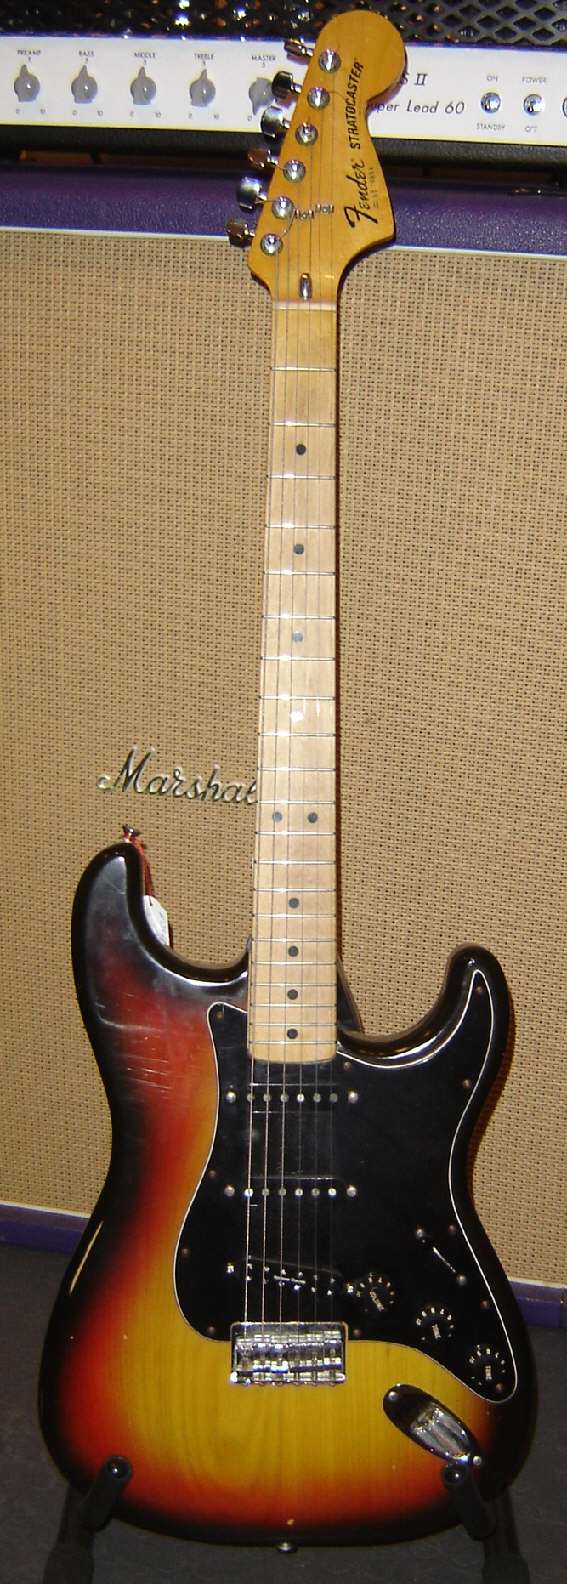 Fender-Stratocaster-1977-sunburst-1.jpg